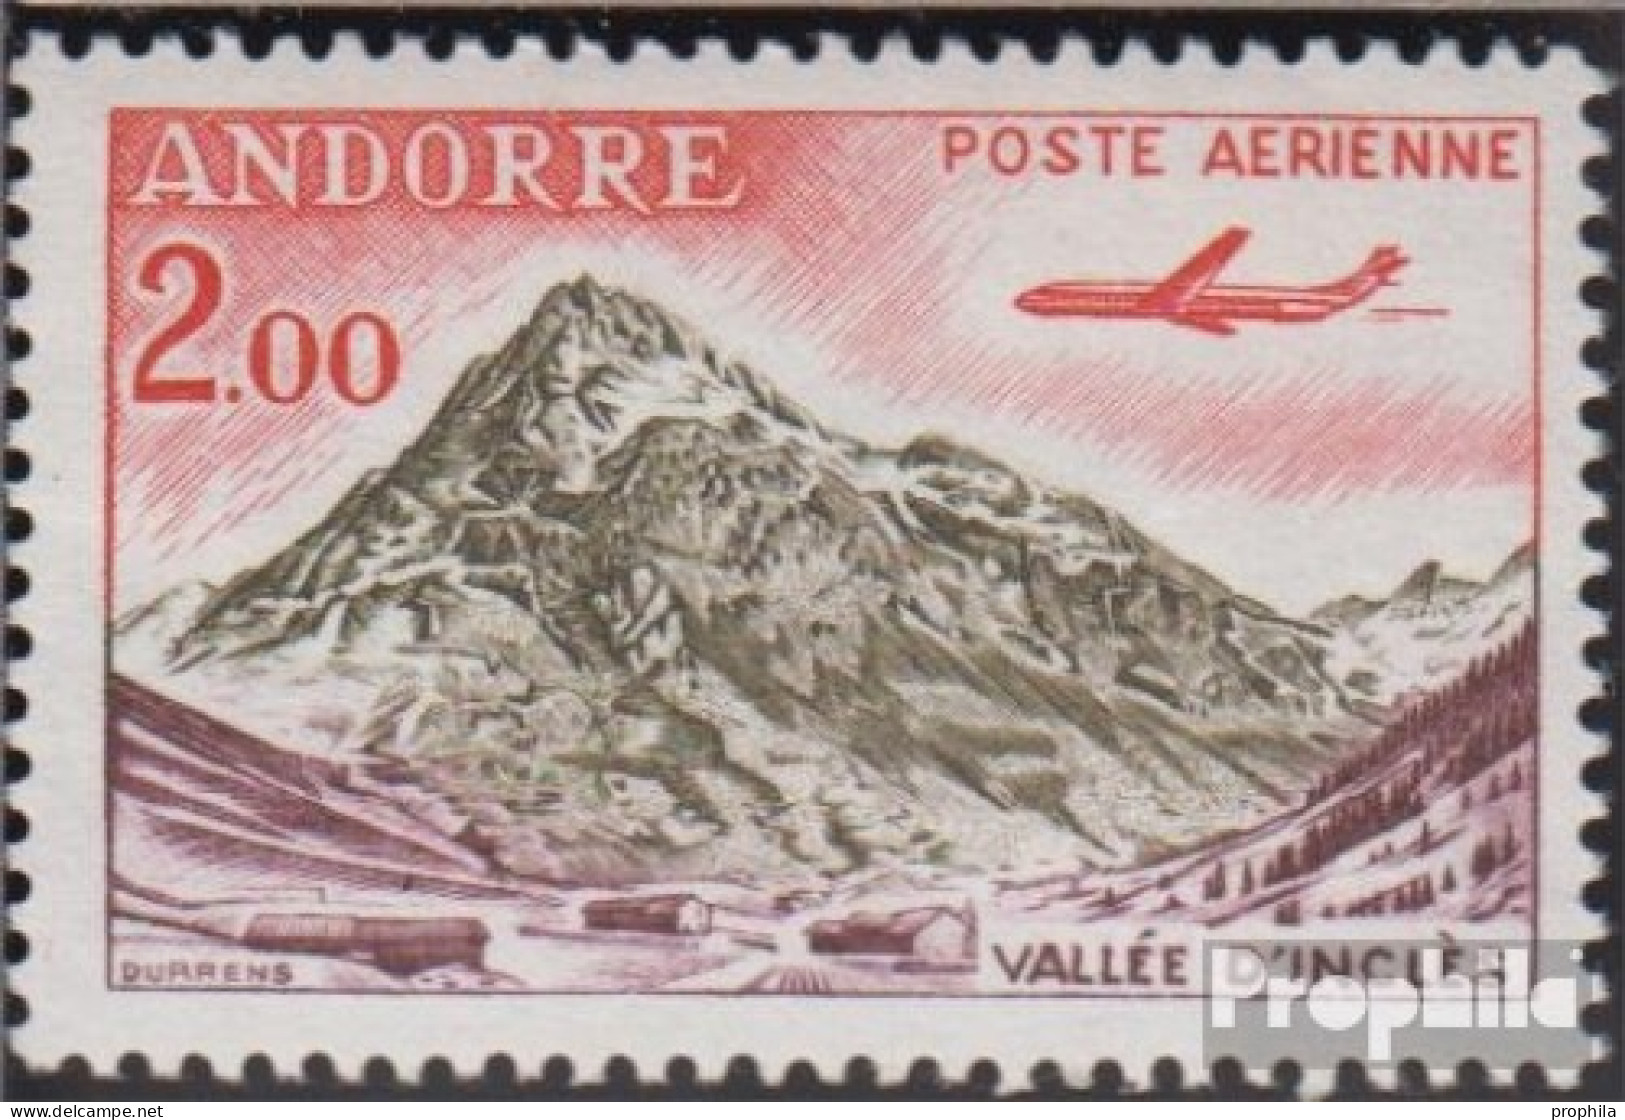 Andorra - Französische Post 175 Postfrisch 1961 Landschaften - Carnets